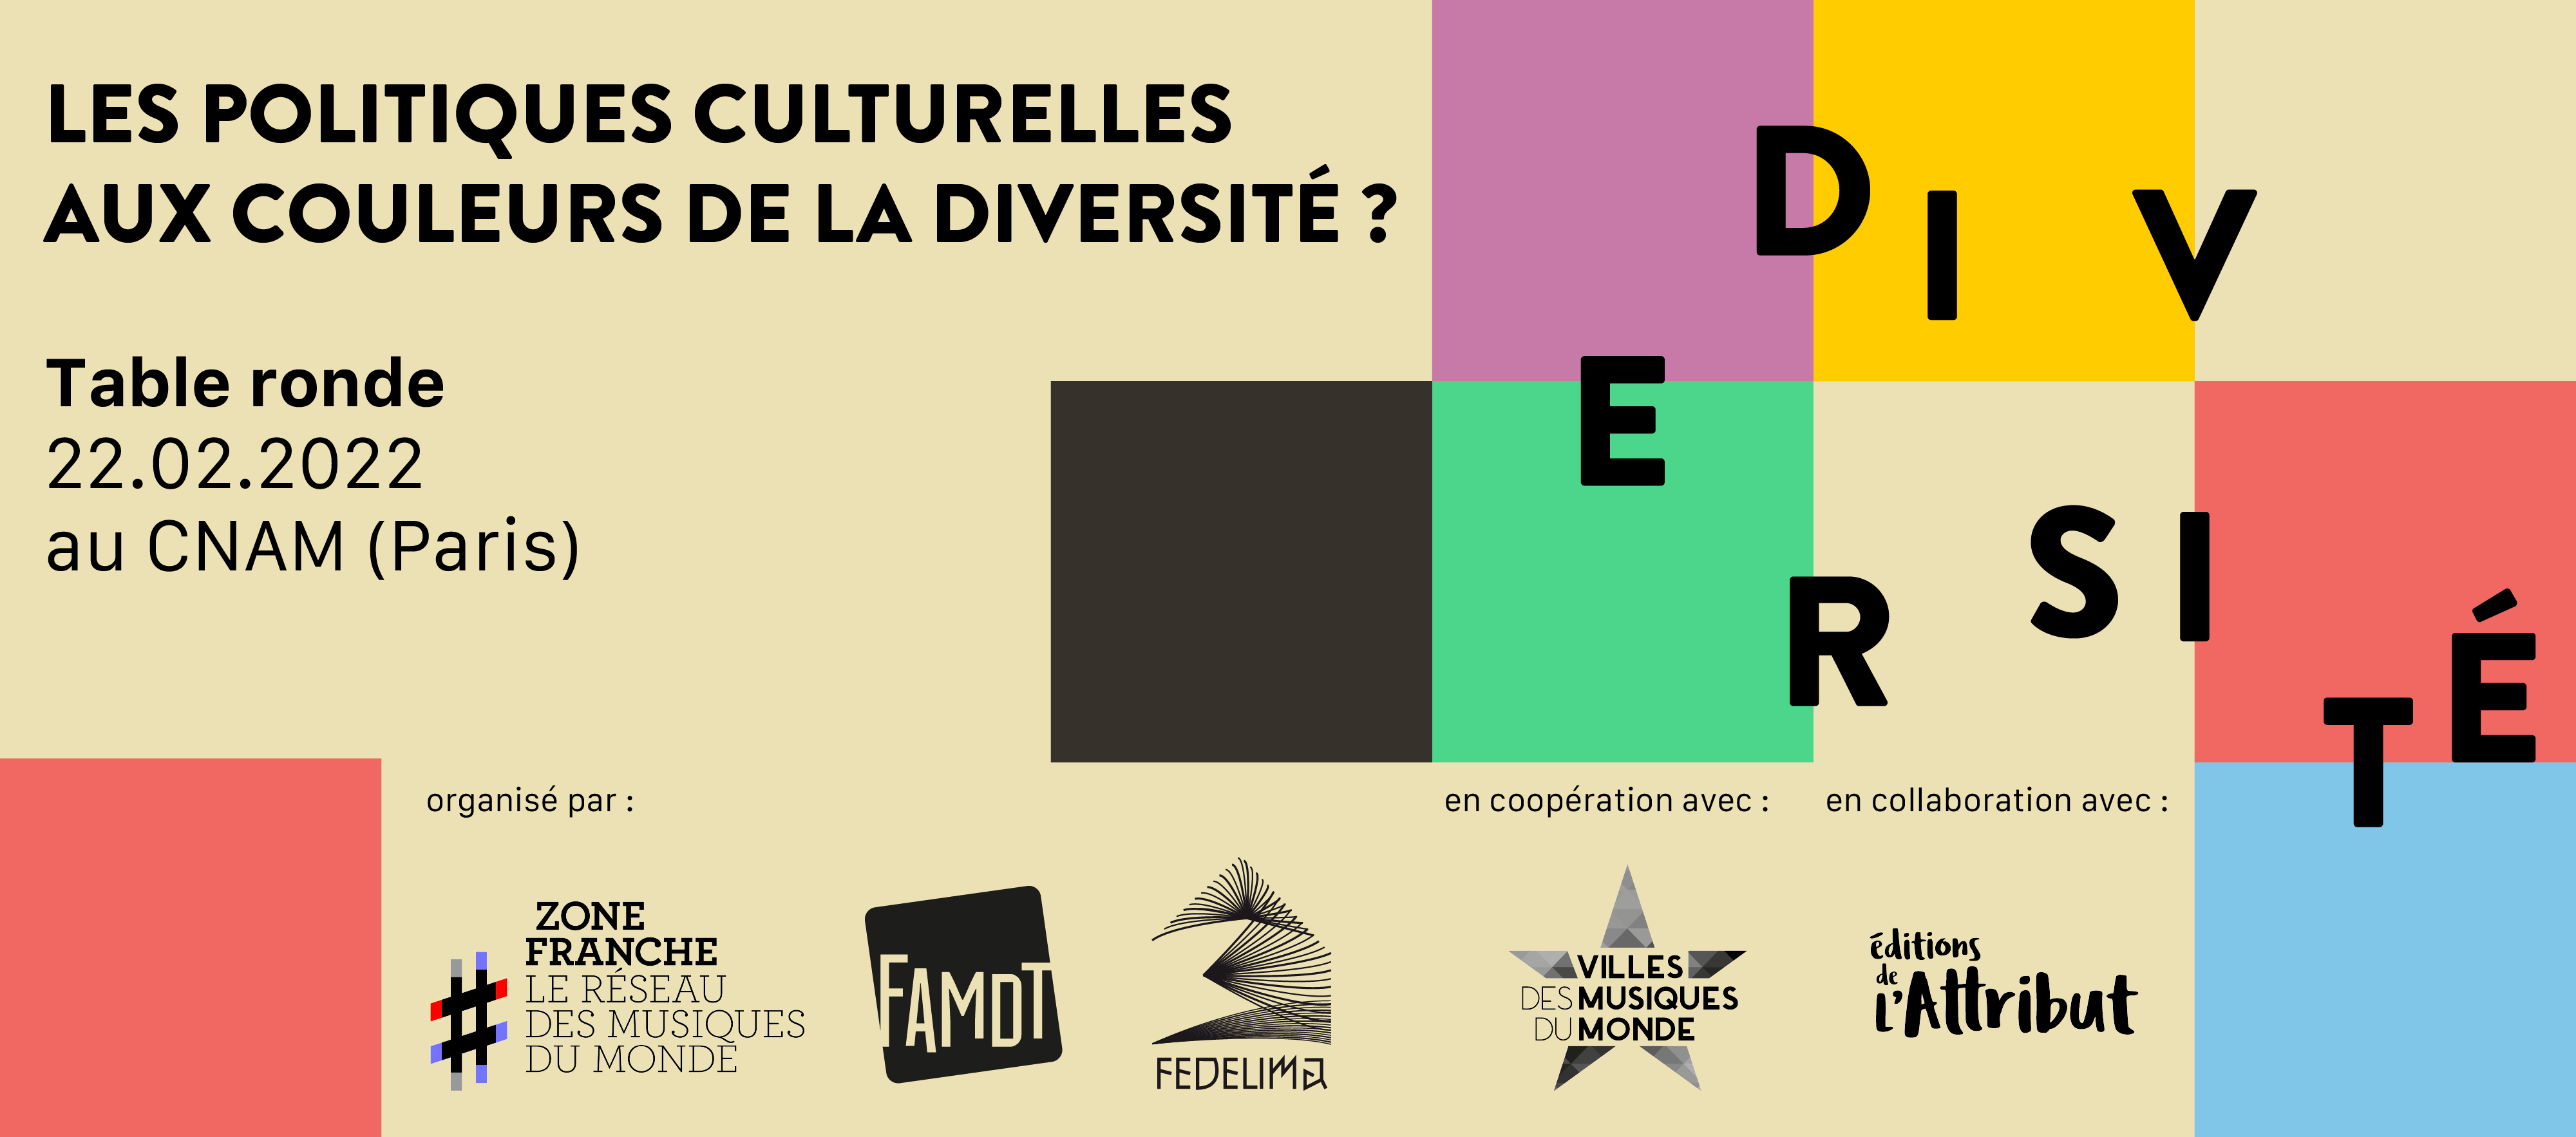 Lire la suite à propos de l’article « Les politiques culturelles aux couleurs de la diversités ? »